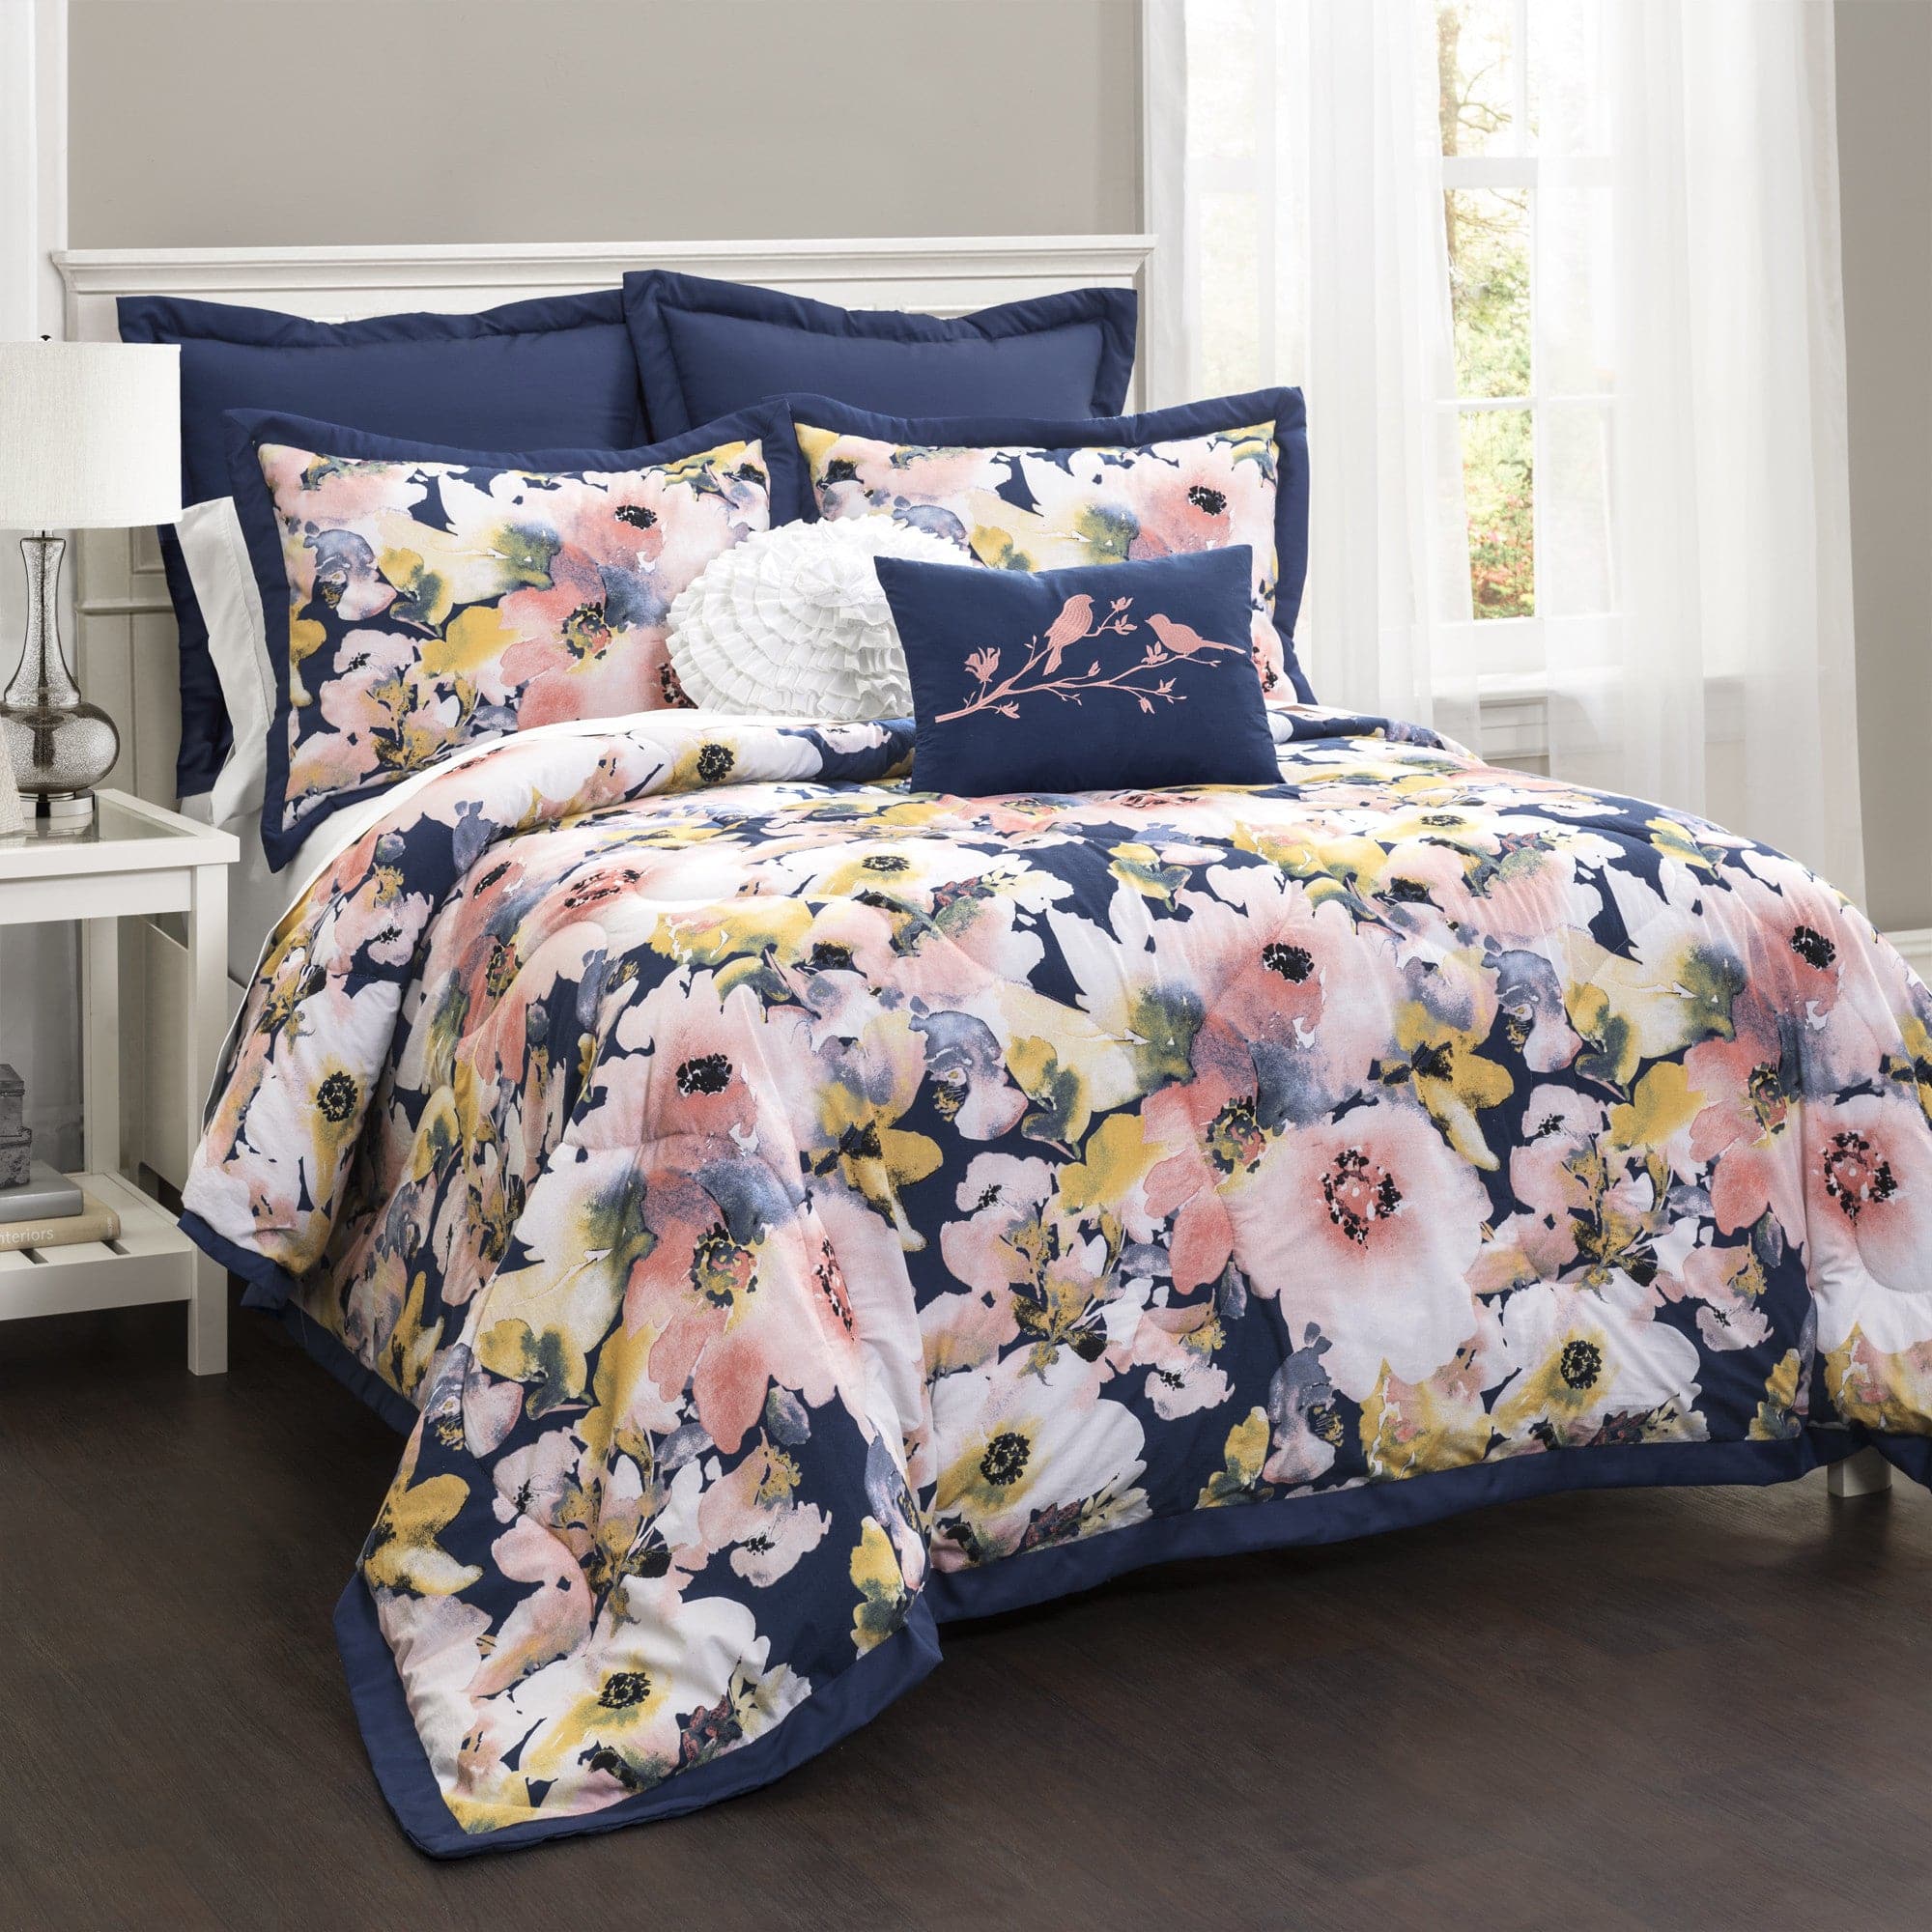 Floral Watercolor Comforter 7 Piece Set, Lush Decor